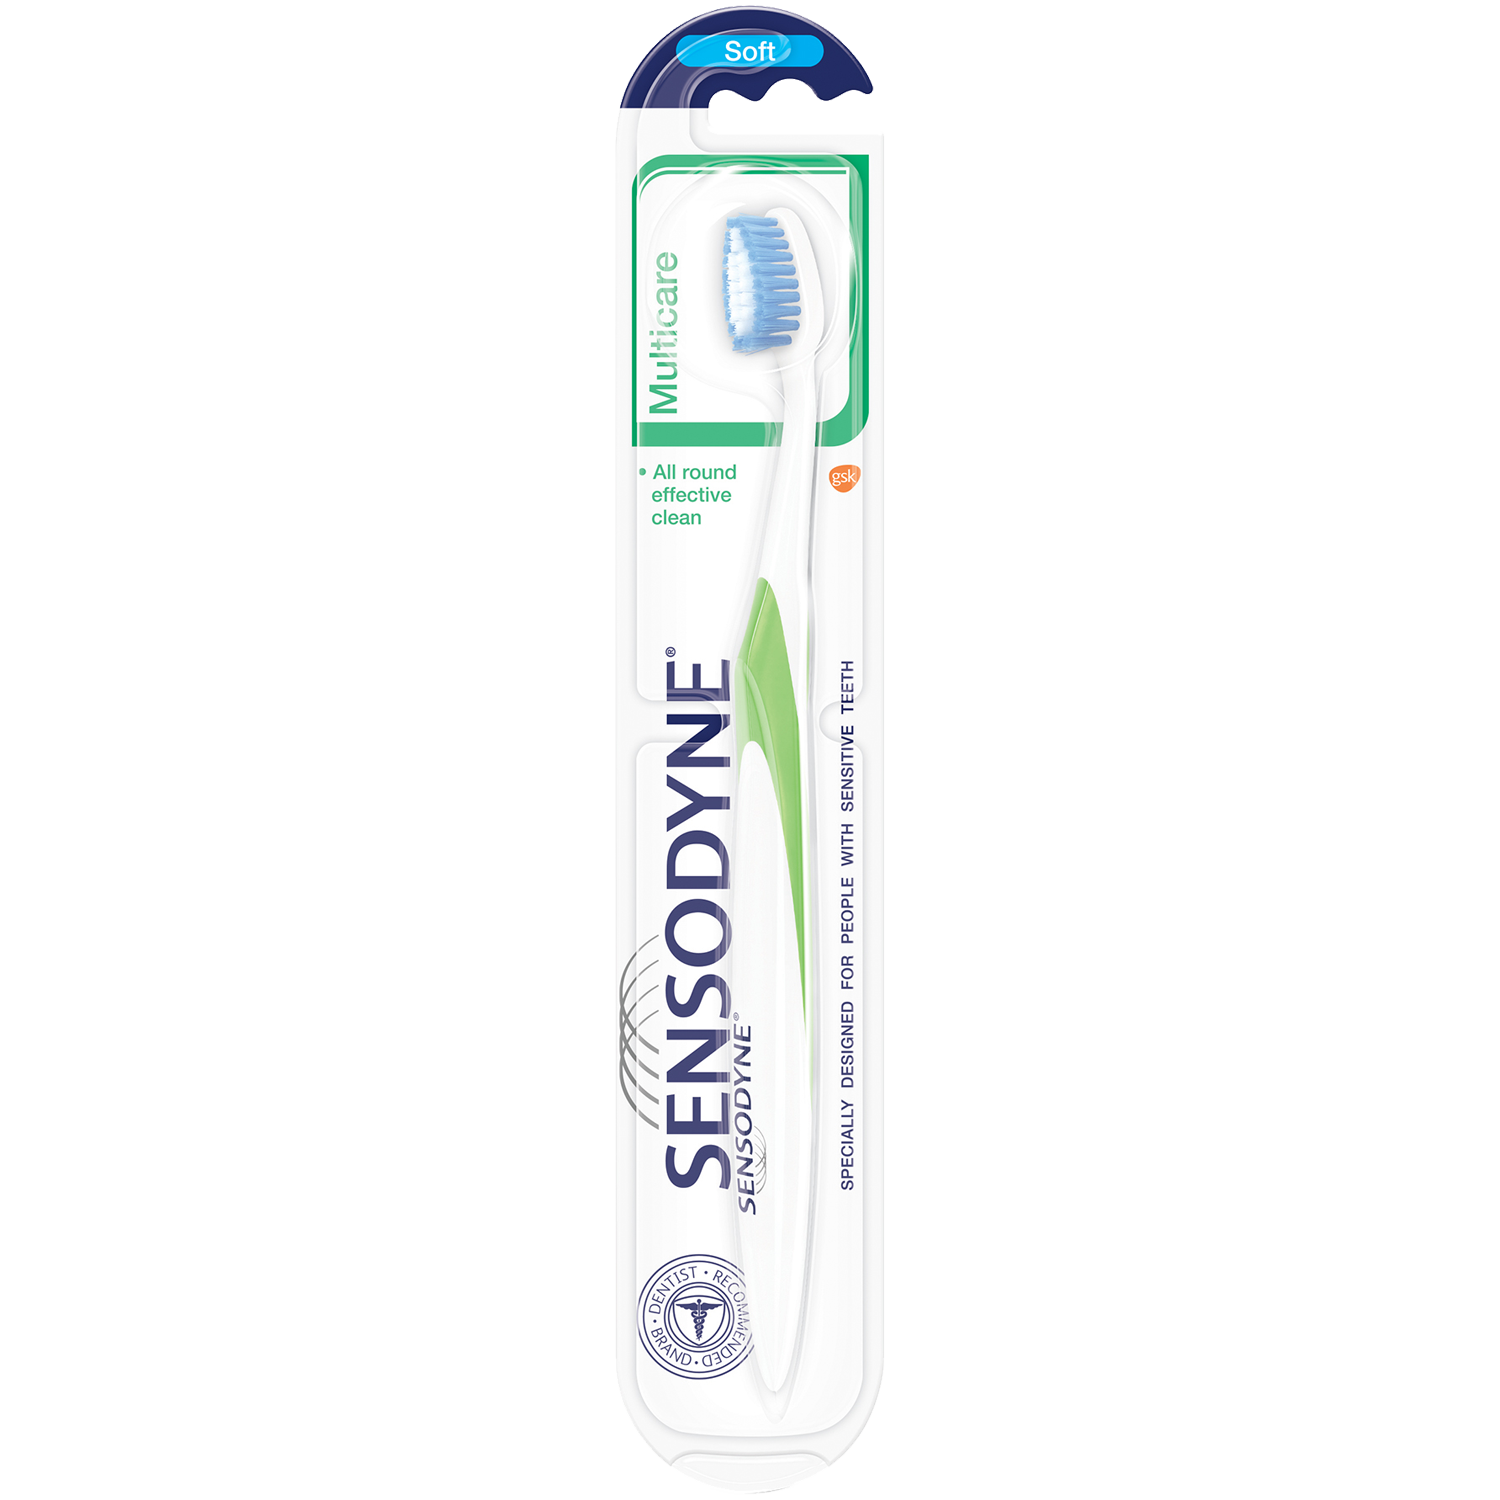 Sensodyne MultiCare зубная щетка мягкая, 1 шт.